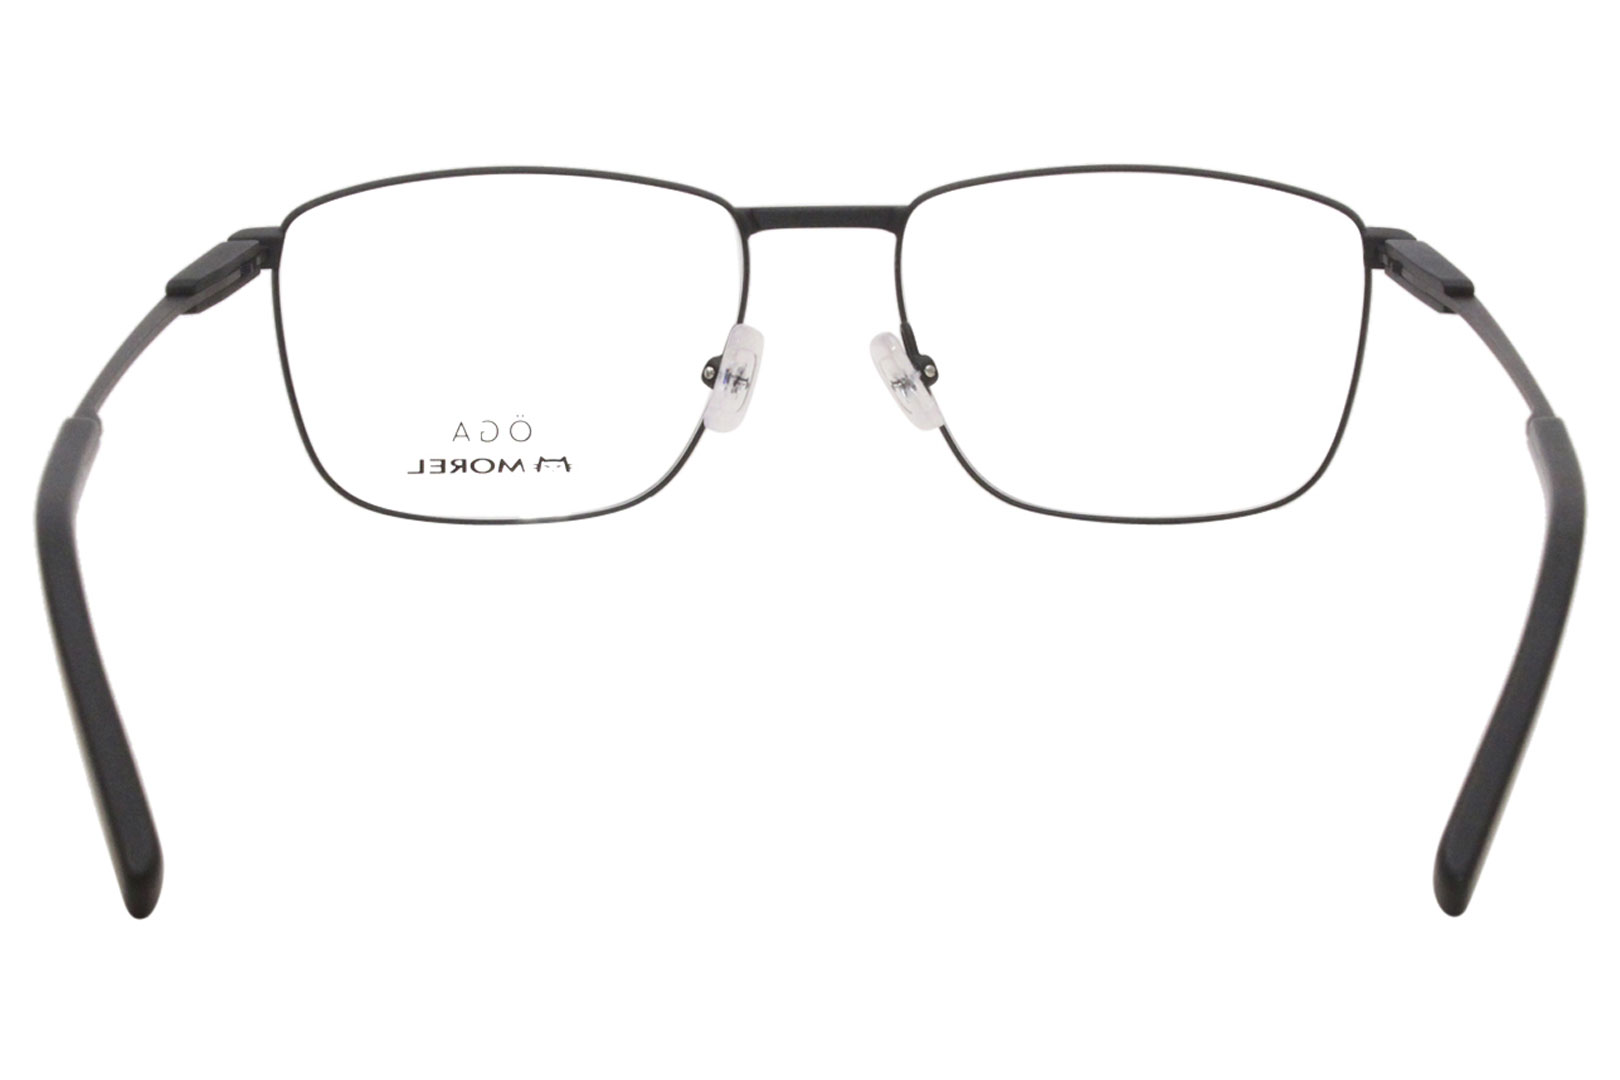 Morel OGA 10126O Eyeglasses Men's Full Rim Rectangular Optical Frame ...